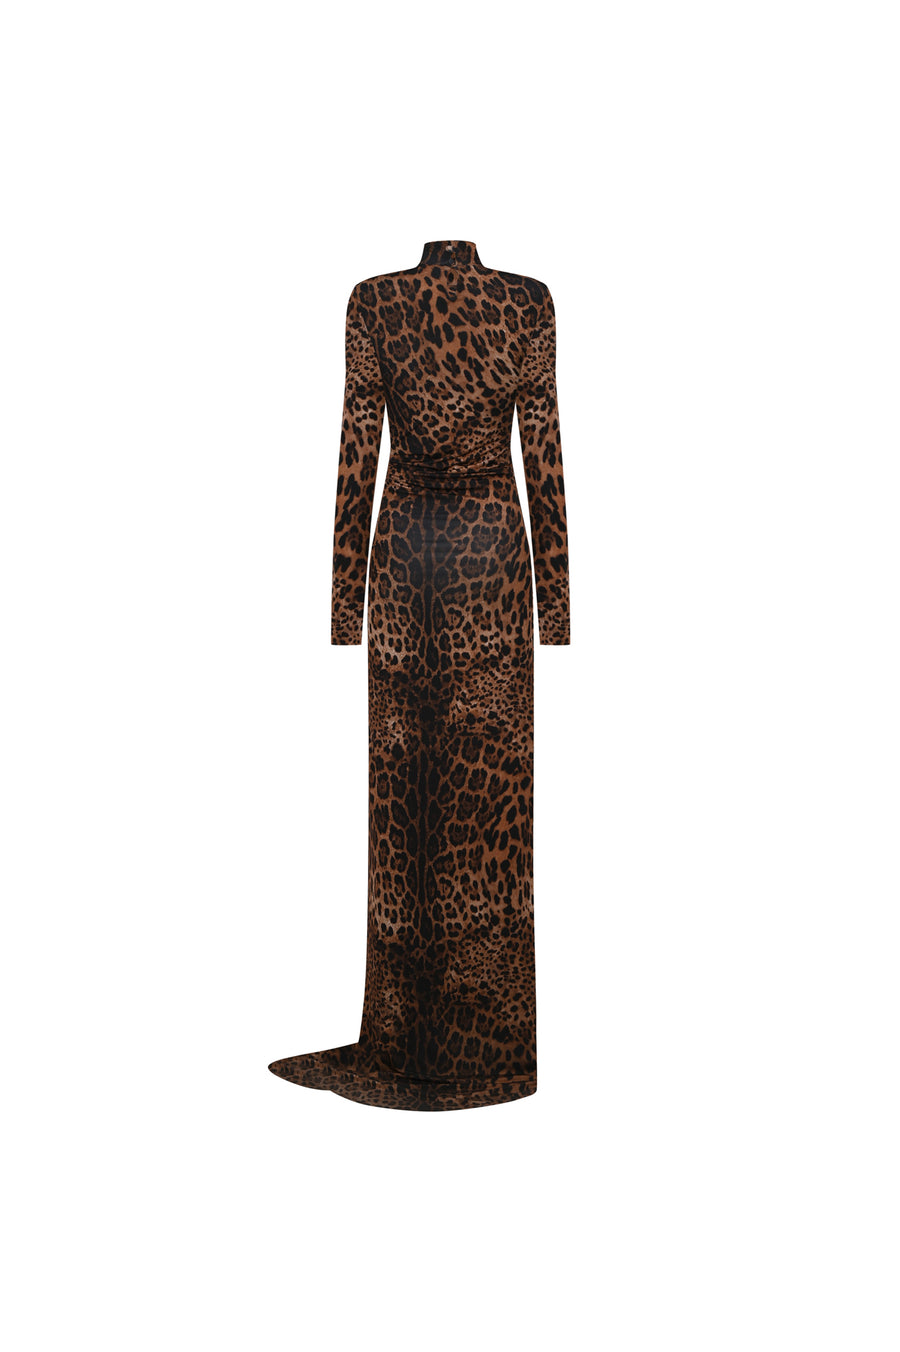 The Mei leopard maxi dress